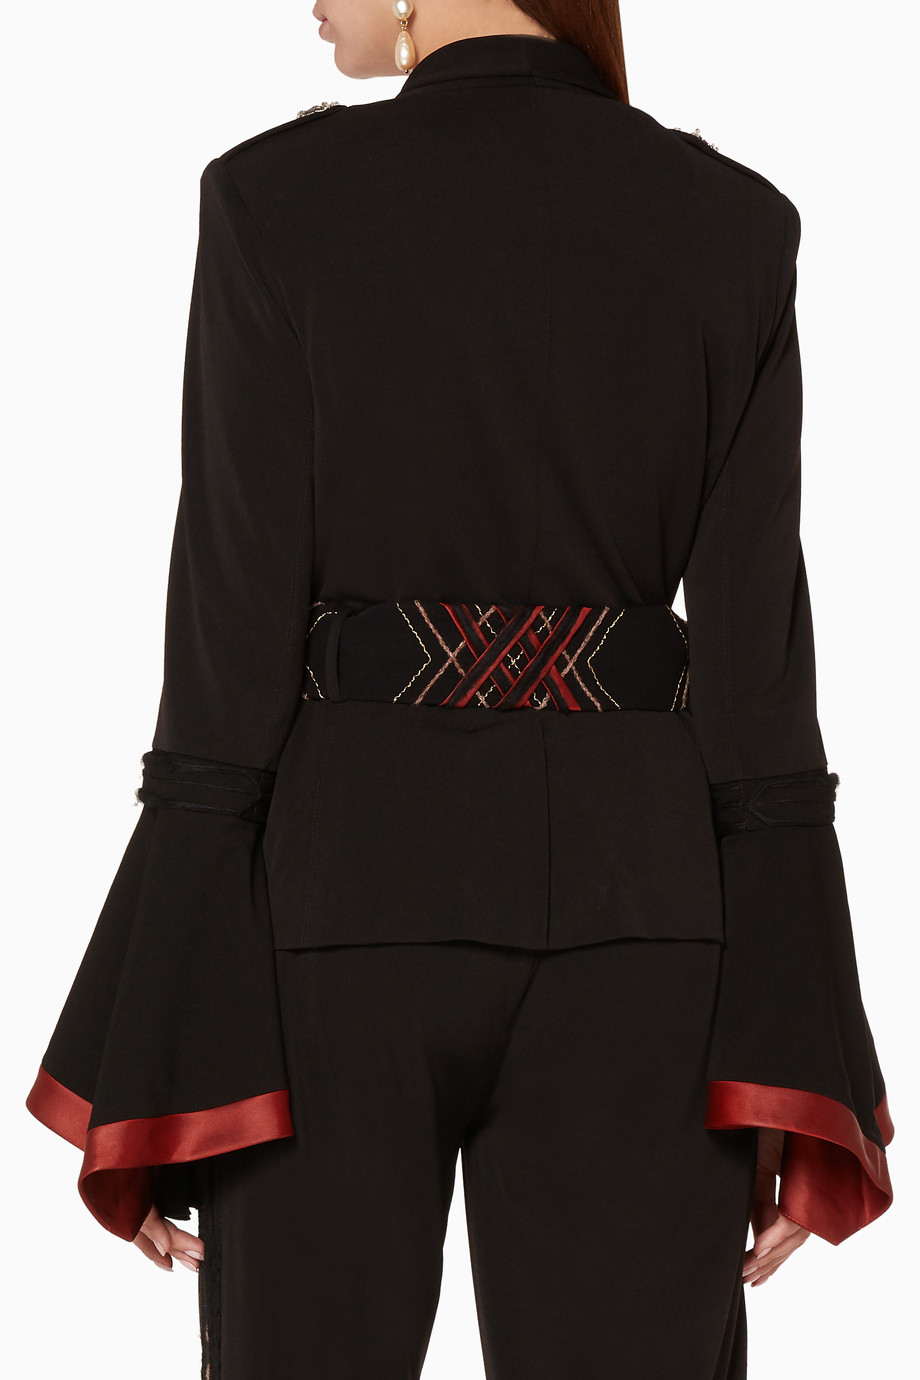 تسوق جاكيت مطرز بحزام أسود Amira Haroon أسود للنساء | اُناس الامارات